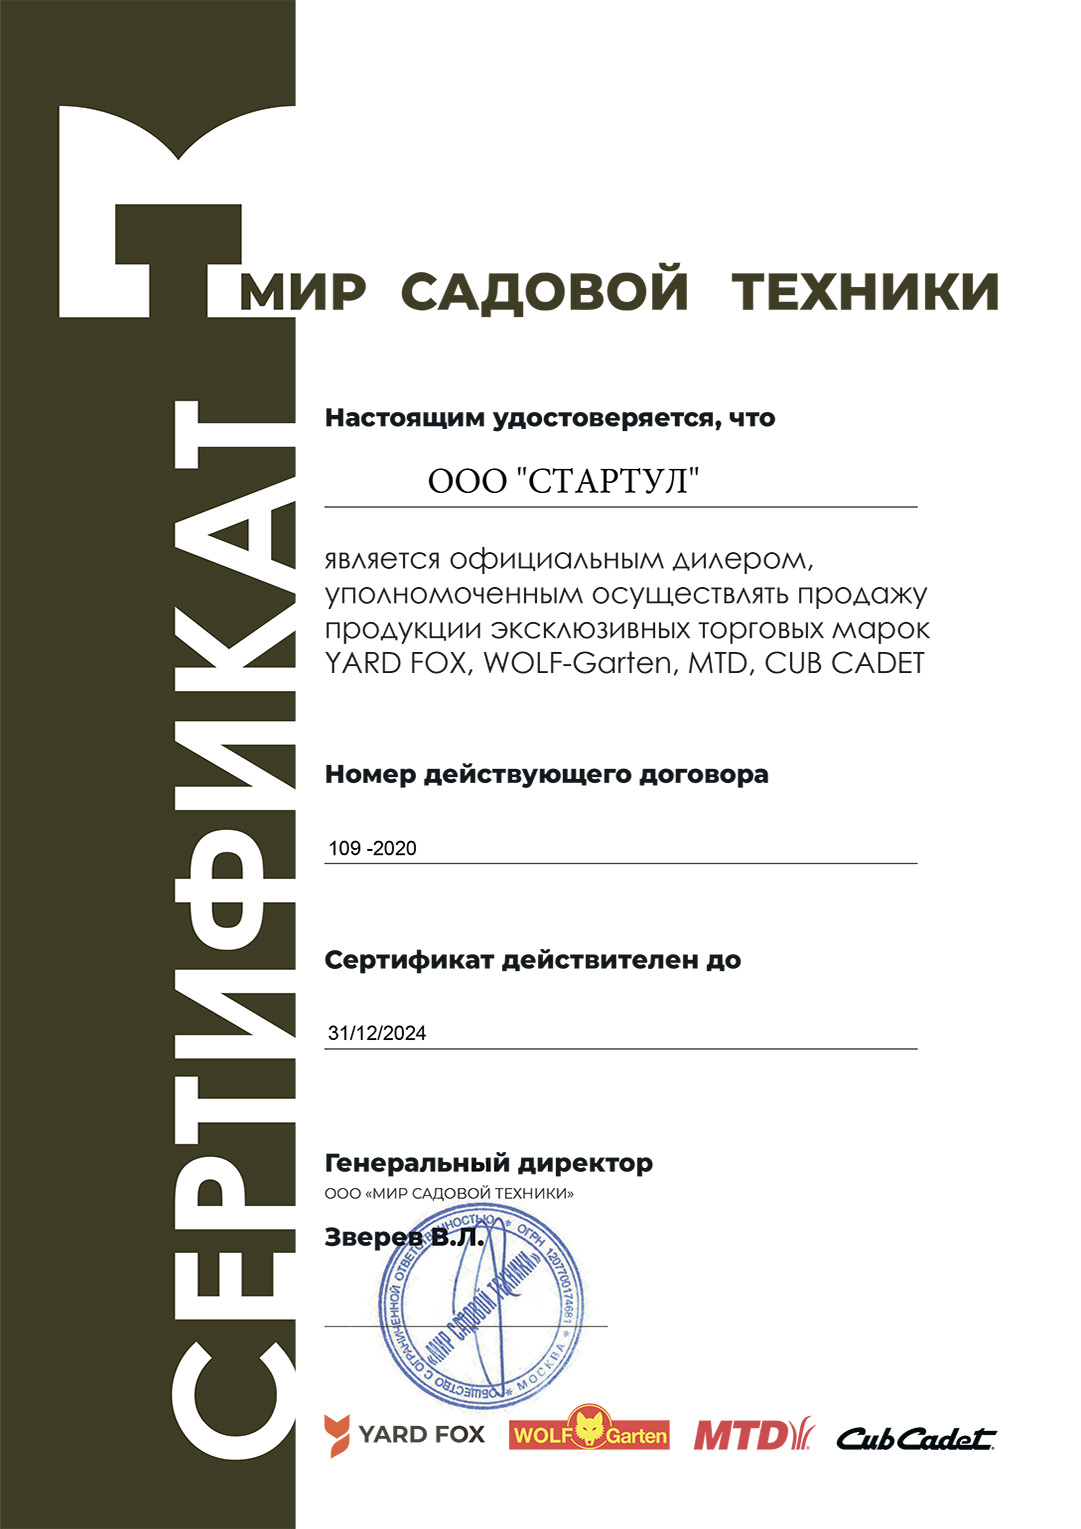 Сертификат официального дилера YARD FOX